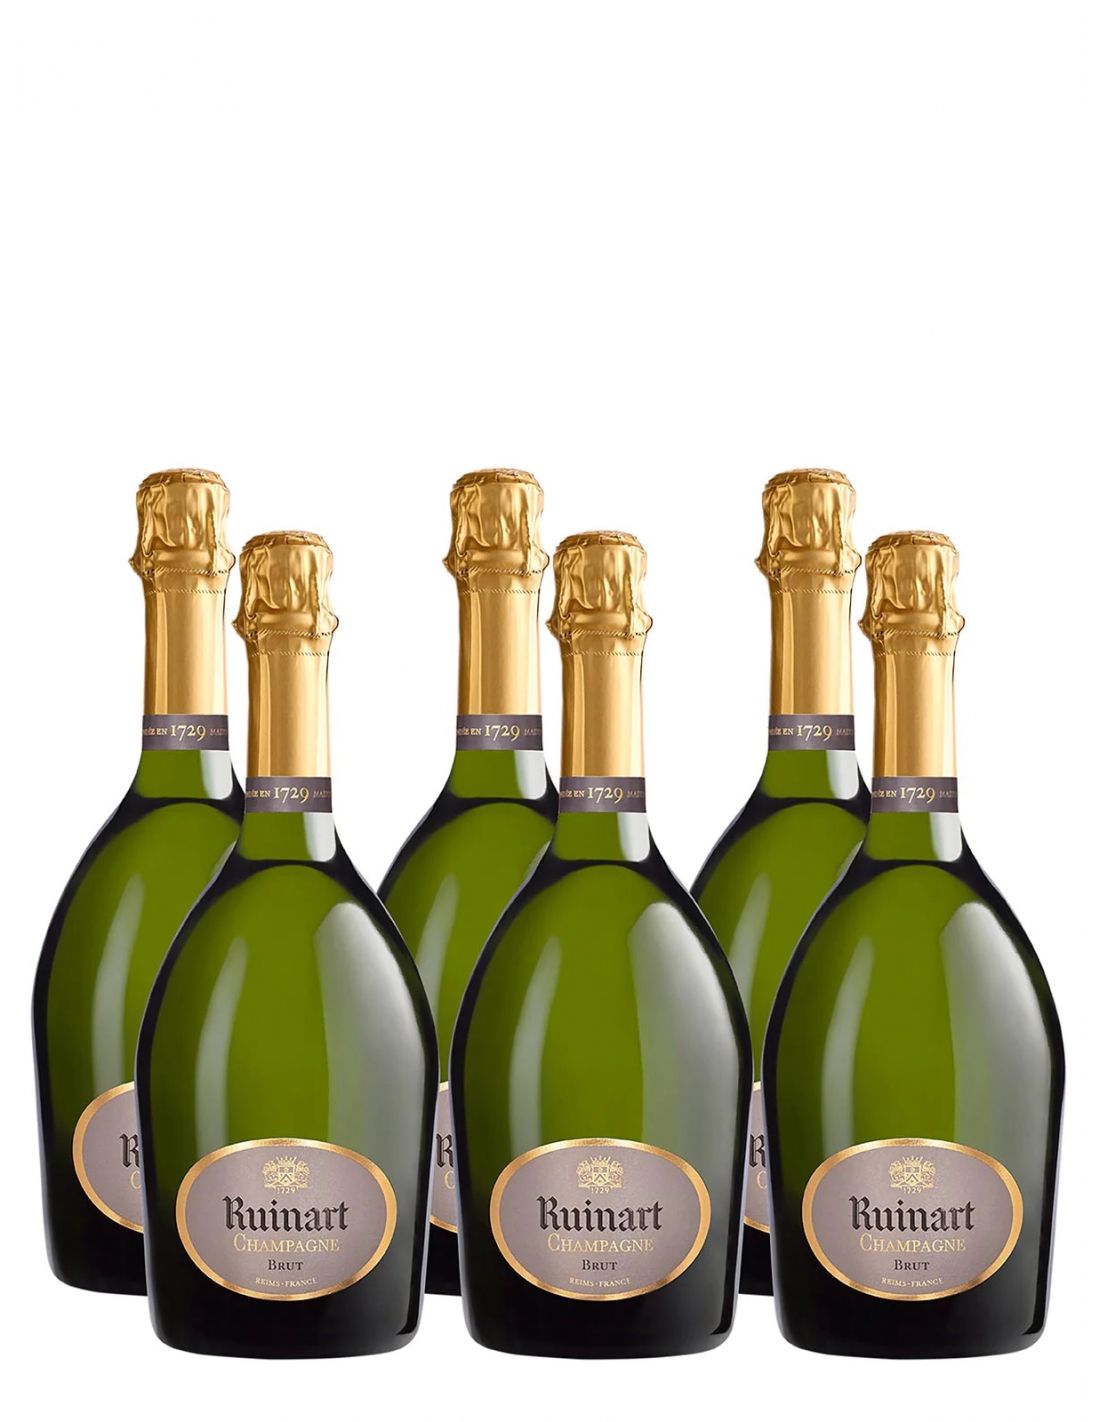 Ruinart Brut - Champagne - Vins Duvernay